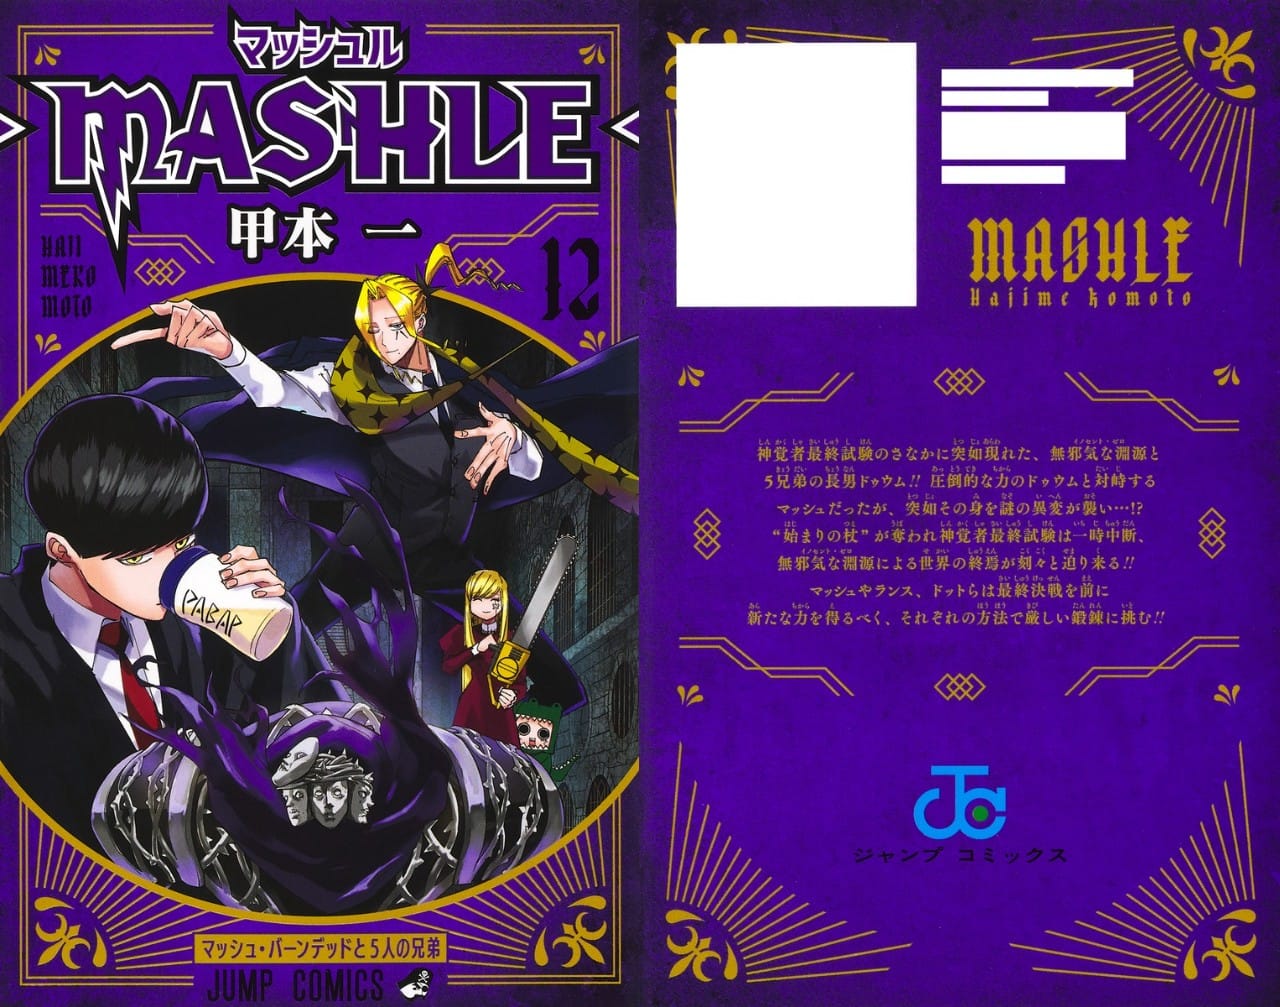 甲本一「マッシュル-MASHLE-」第12巻 2022年7月4日発売!